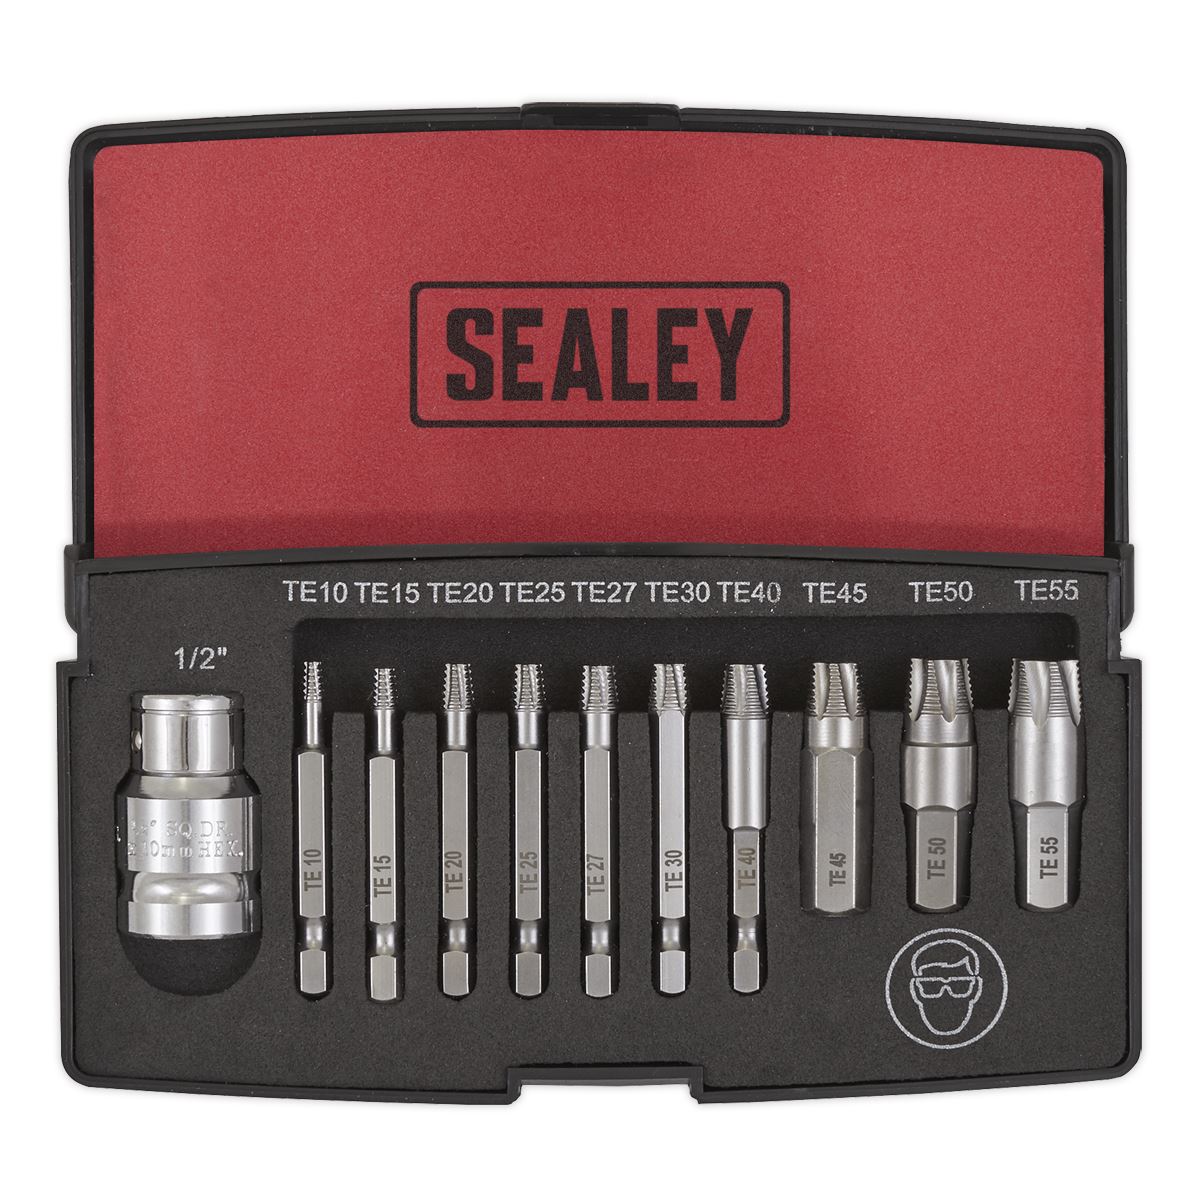 Sealey 11 Piece Trx-Star Fitting Screw Extractor Set E10-E55